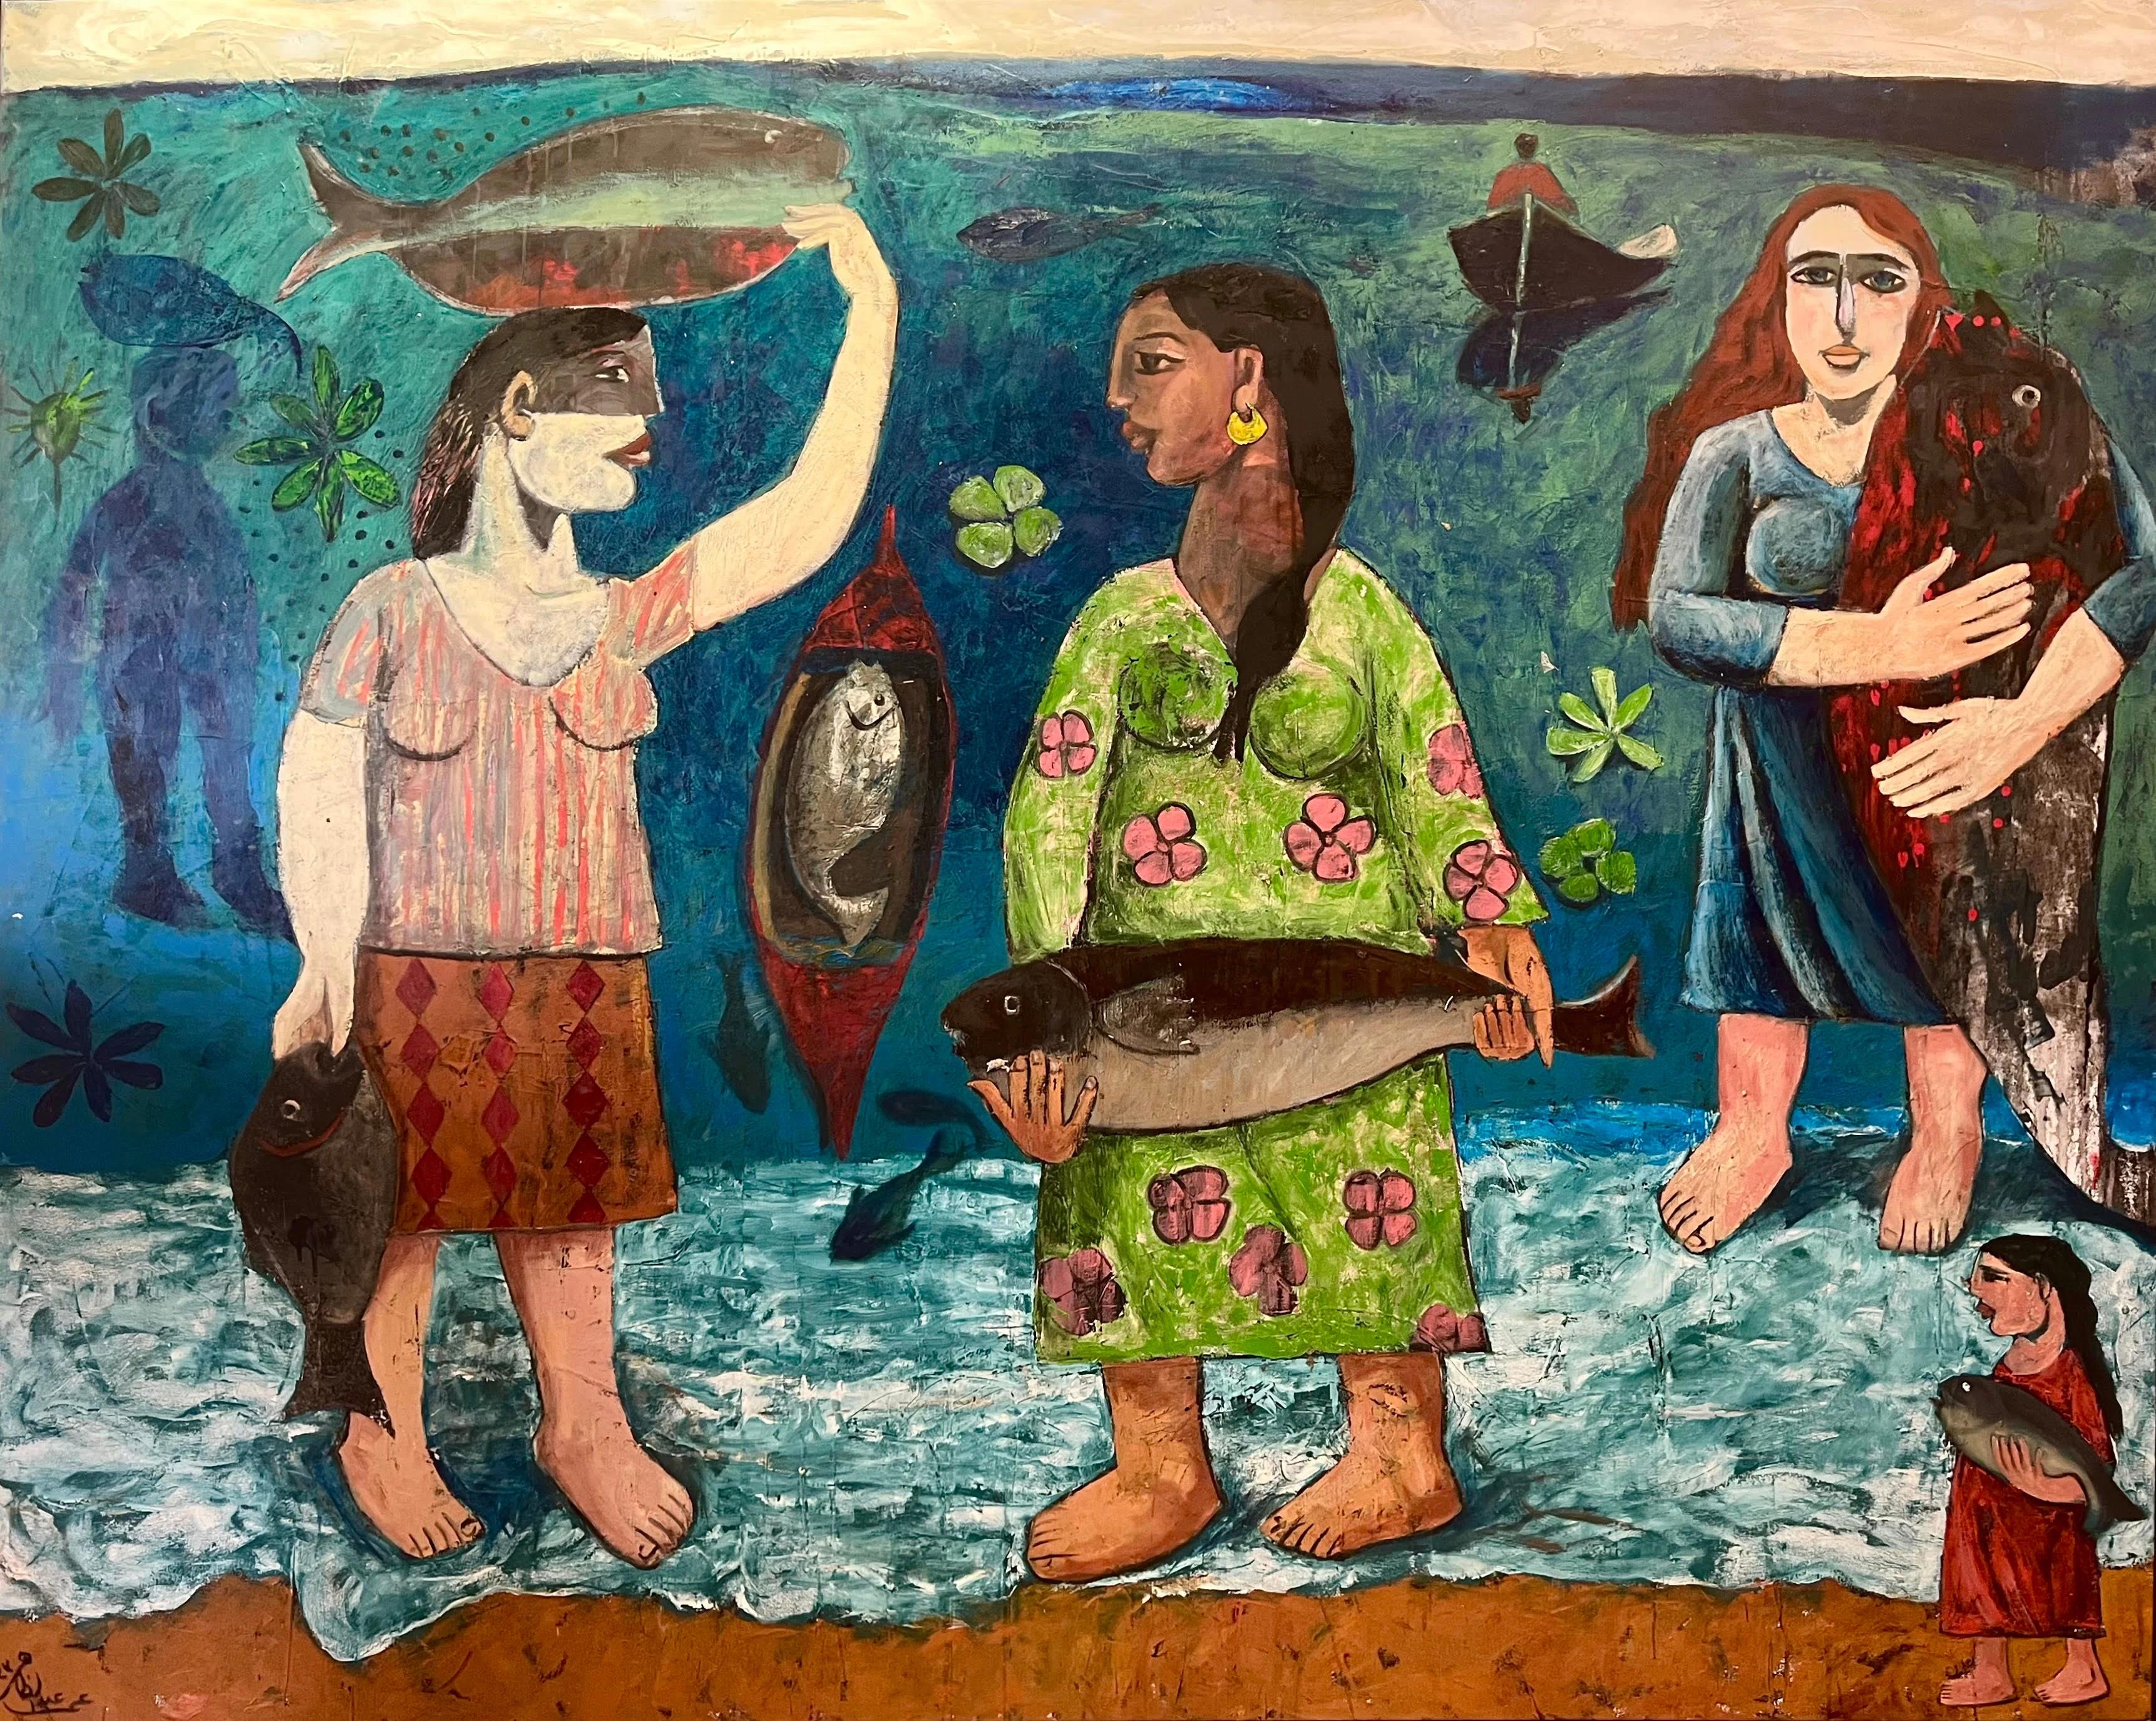 "Maritime Maternal" Peinture à l'huile 68" x 86" inch par Omar Abdel Zaher

Abdel Zaher est diplômé de l'Academy of Fine Arts d'Helwan. Il peint depuis trois décennies et a notamment participé à diverses expositions collectives, dont le Salon El